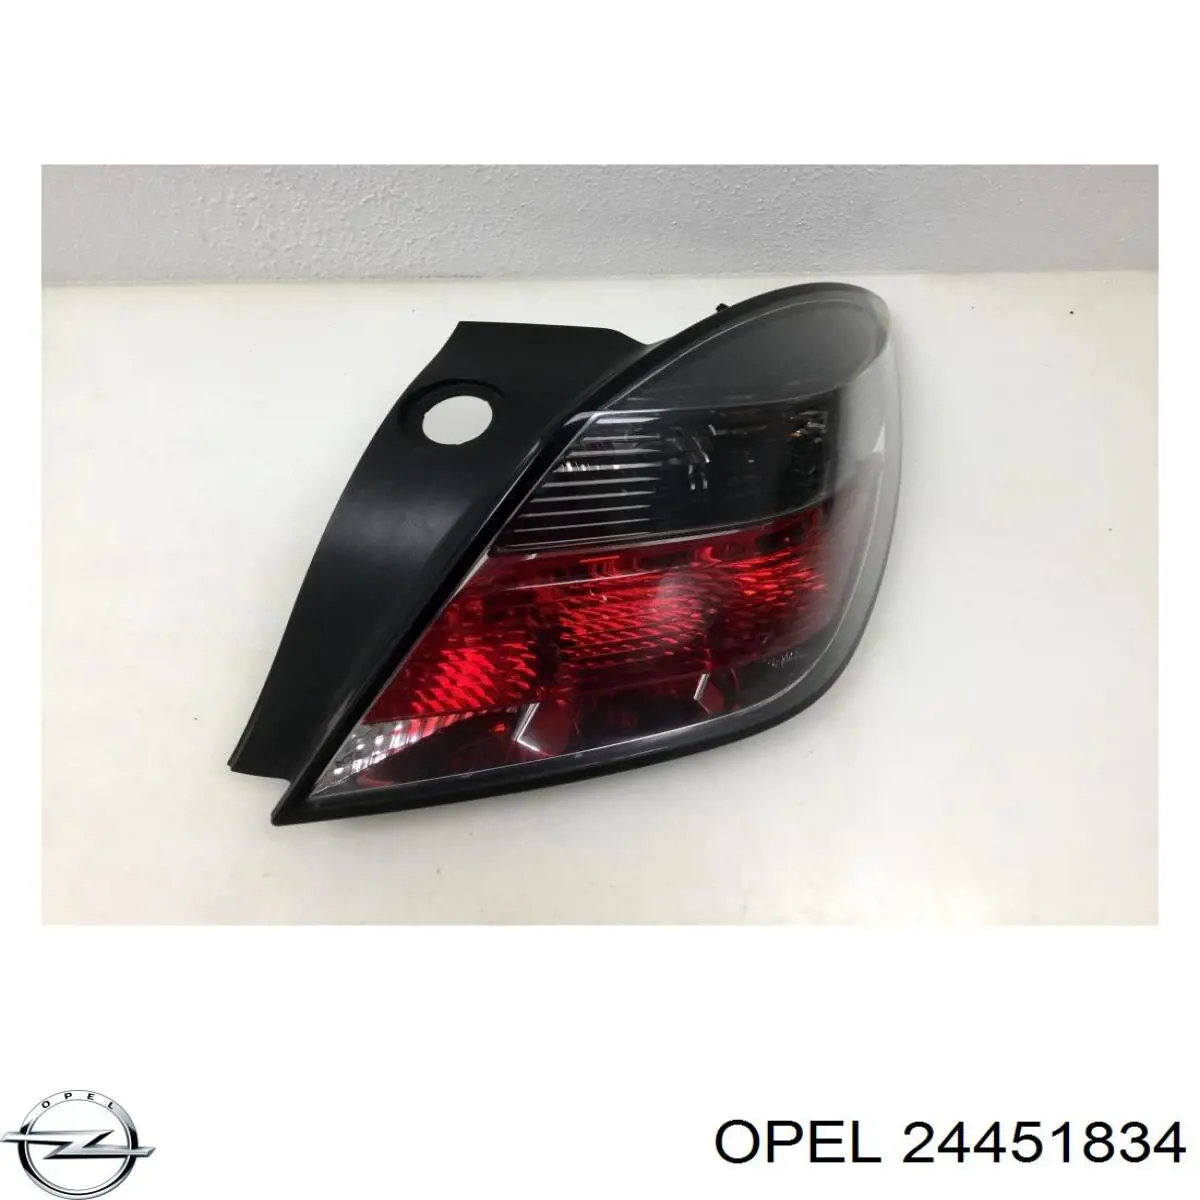 24451834 Opel фонарь задний правый